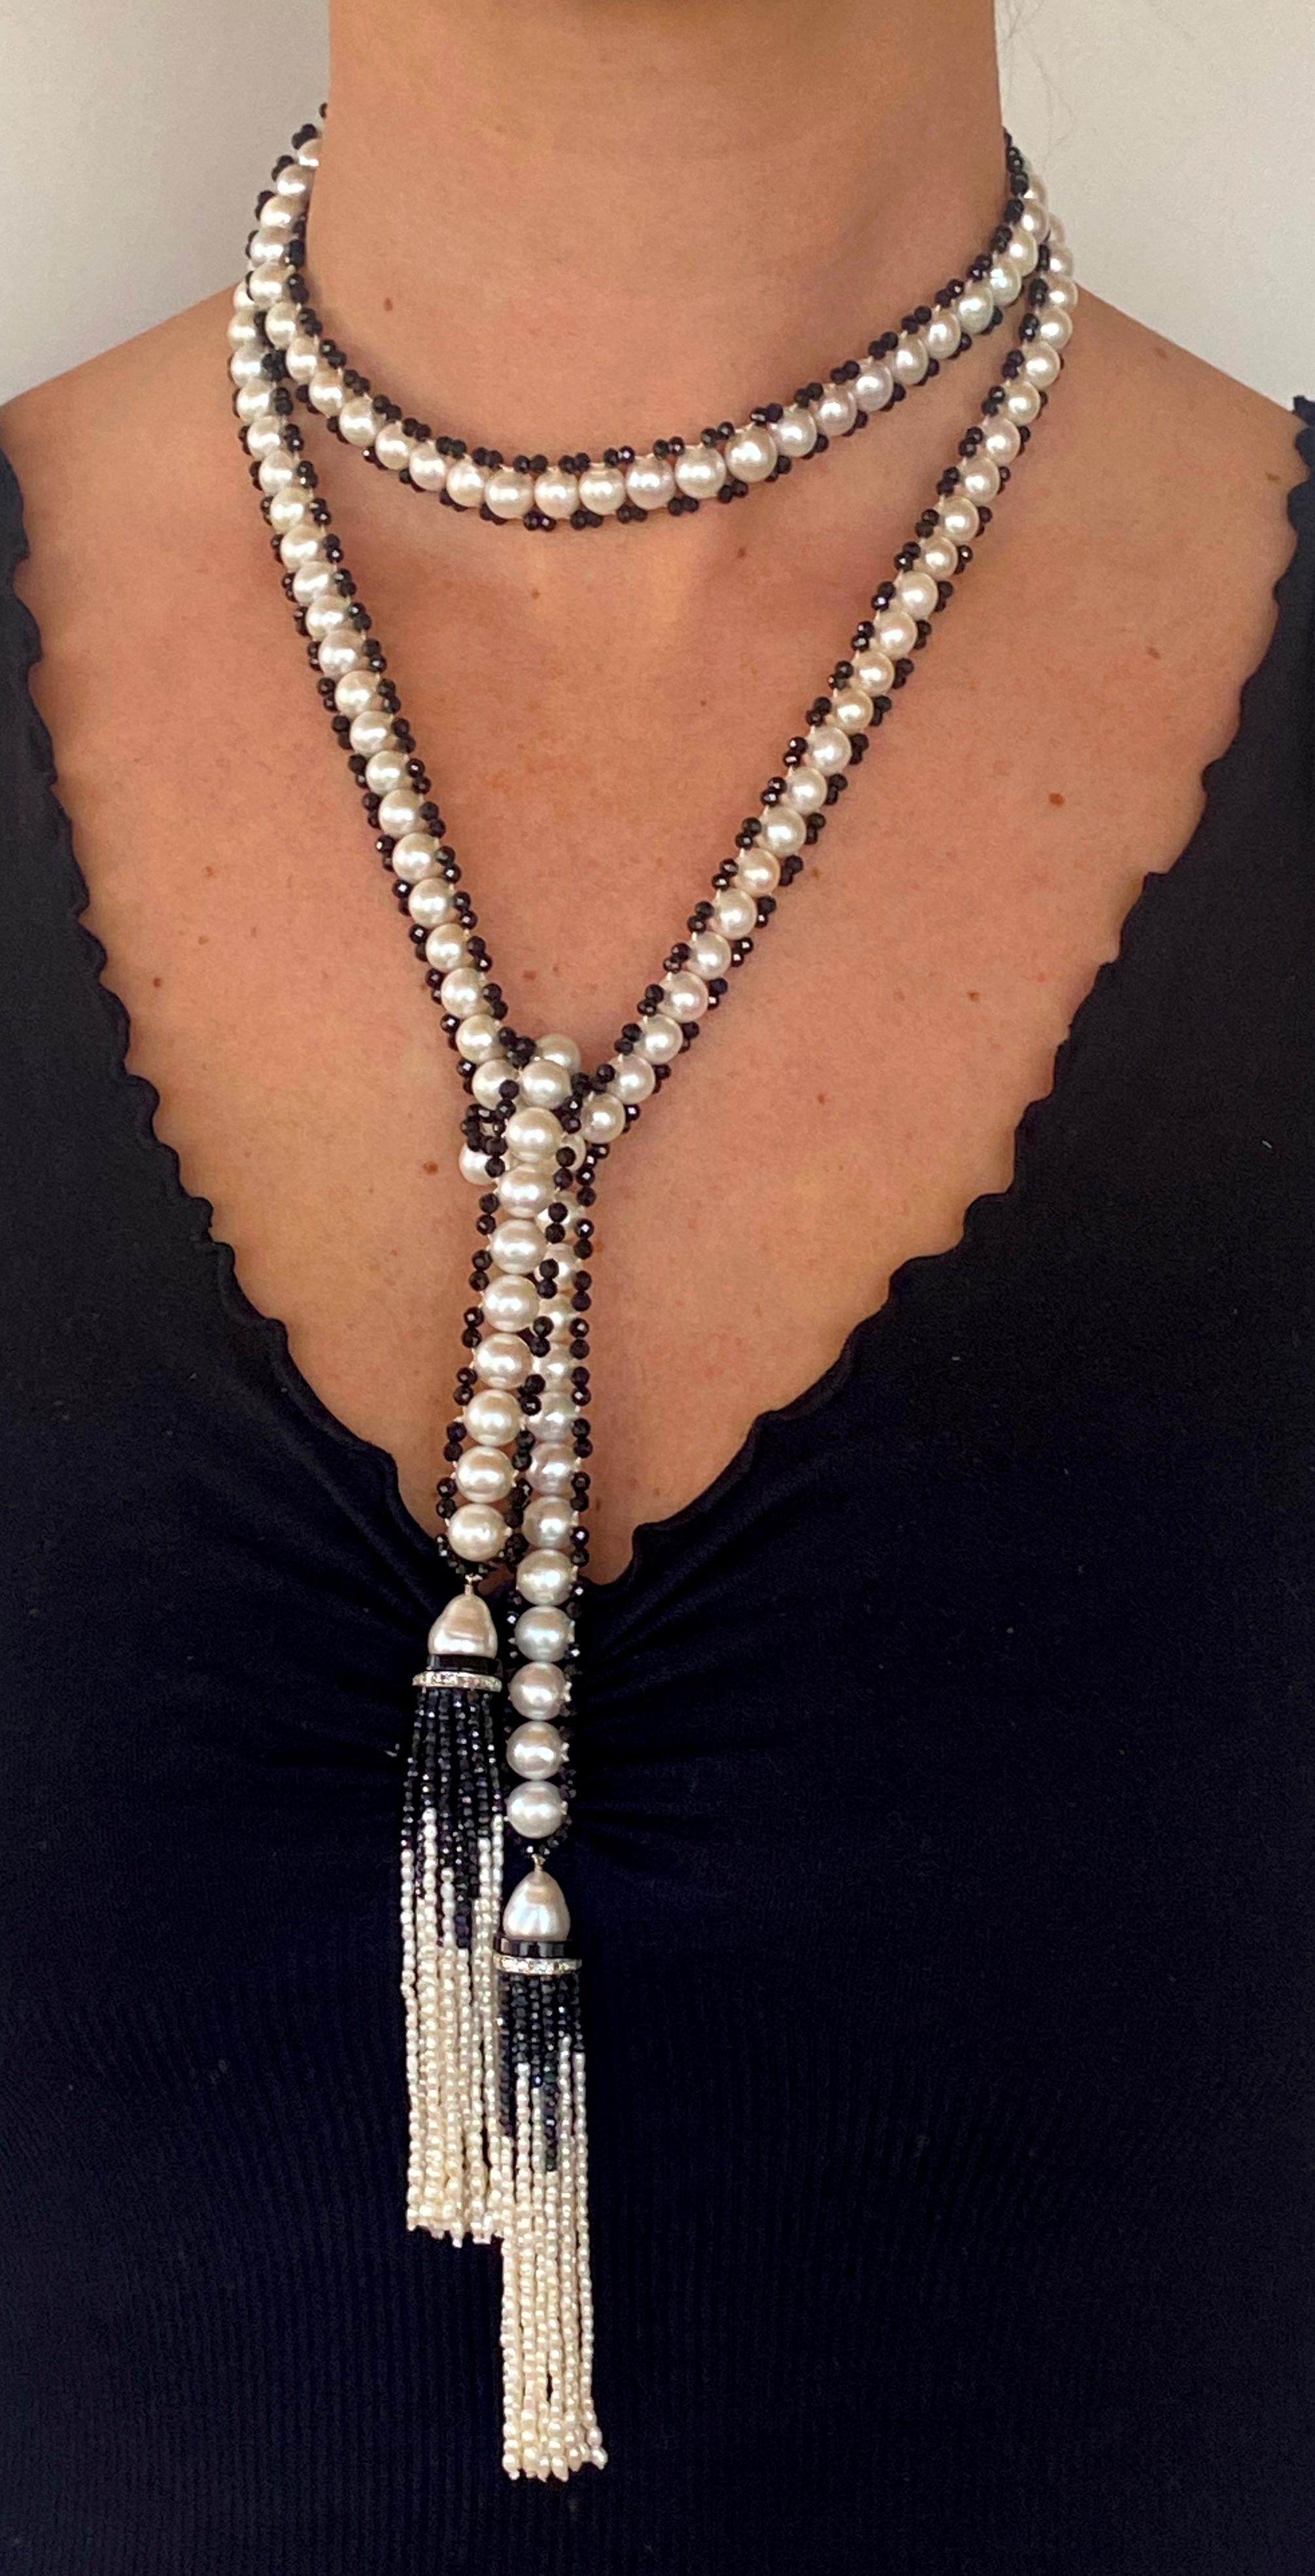 Magnifique Sautoir tissé à la main par Marina J. Cette pièce présente des perles parfaitement rondes qui affichent une brillance et un éclat sauvages, bordées de perles d'onyx noir lisses. Chaque perle a été choisie individuellement, ce qui confère